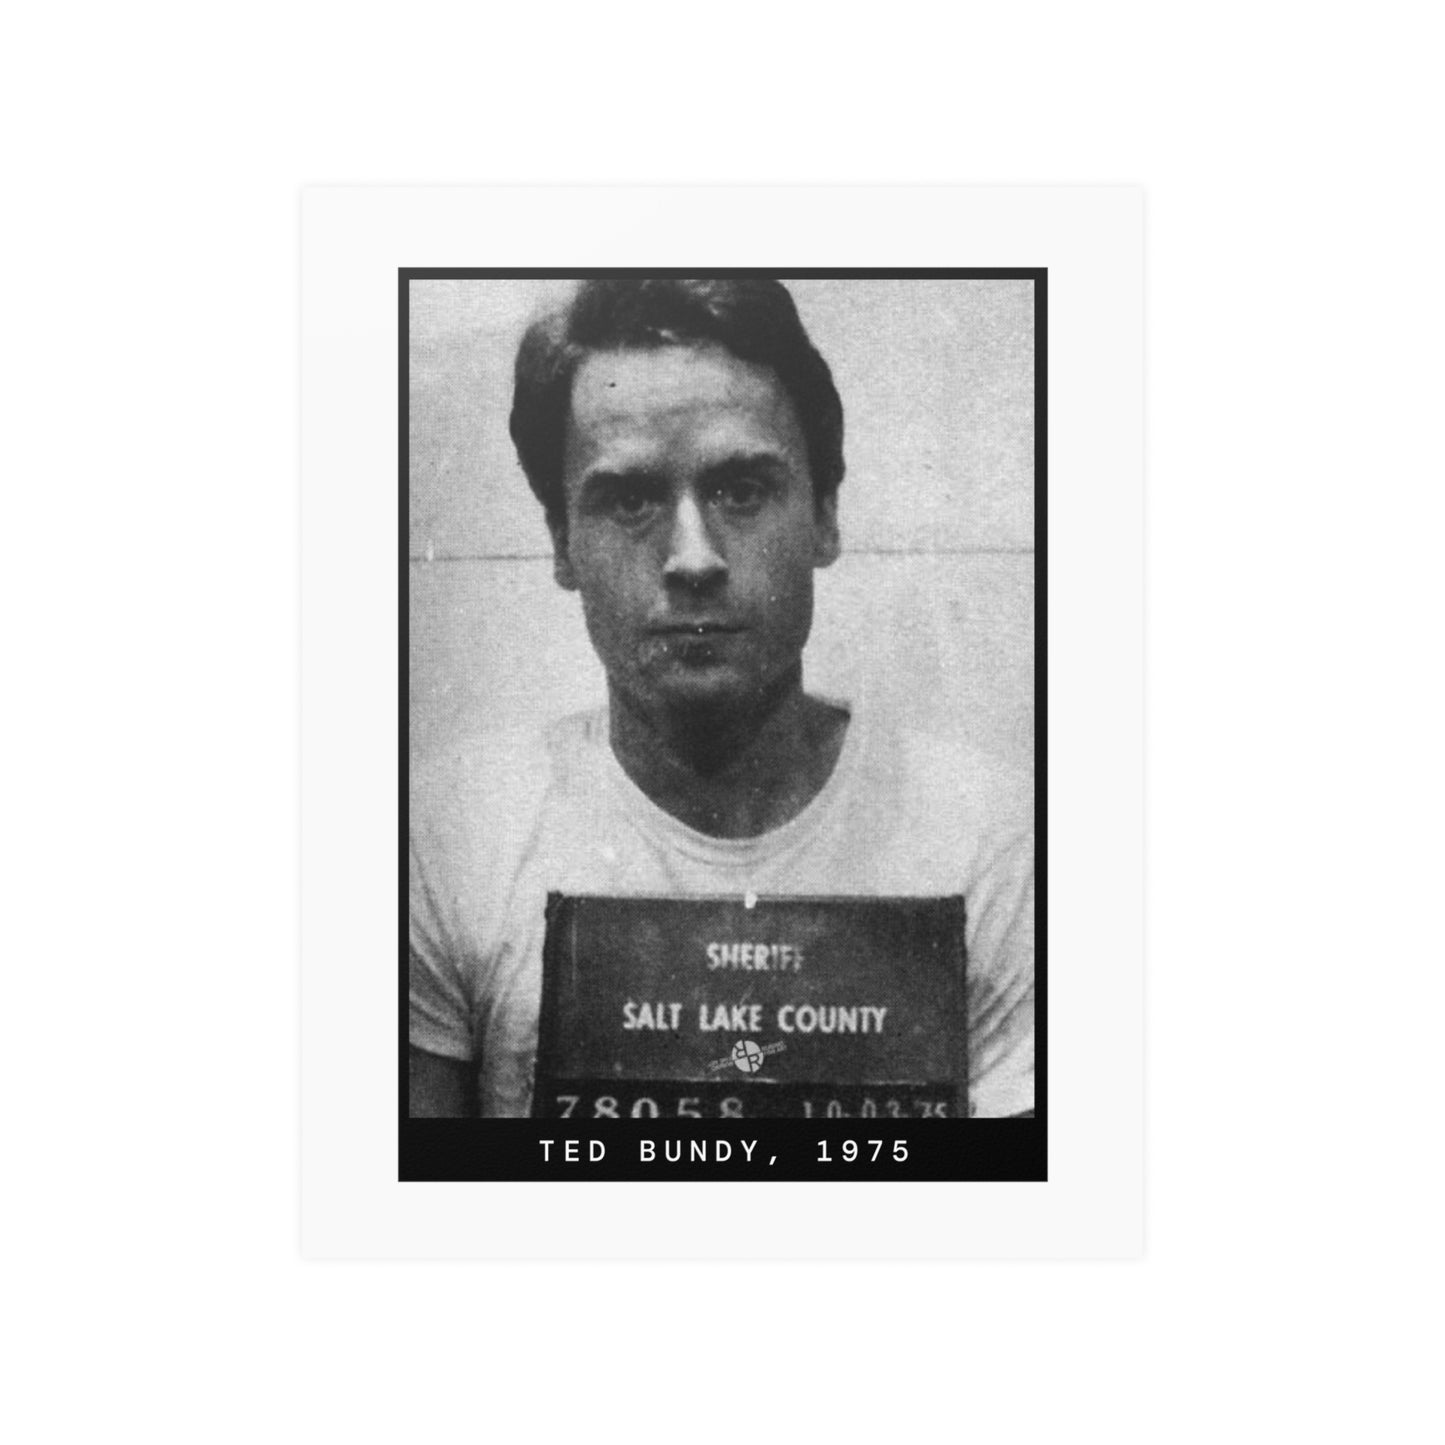 Ted Bundy, 1975 Serial Killer Mugshot Poster